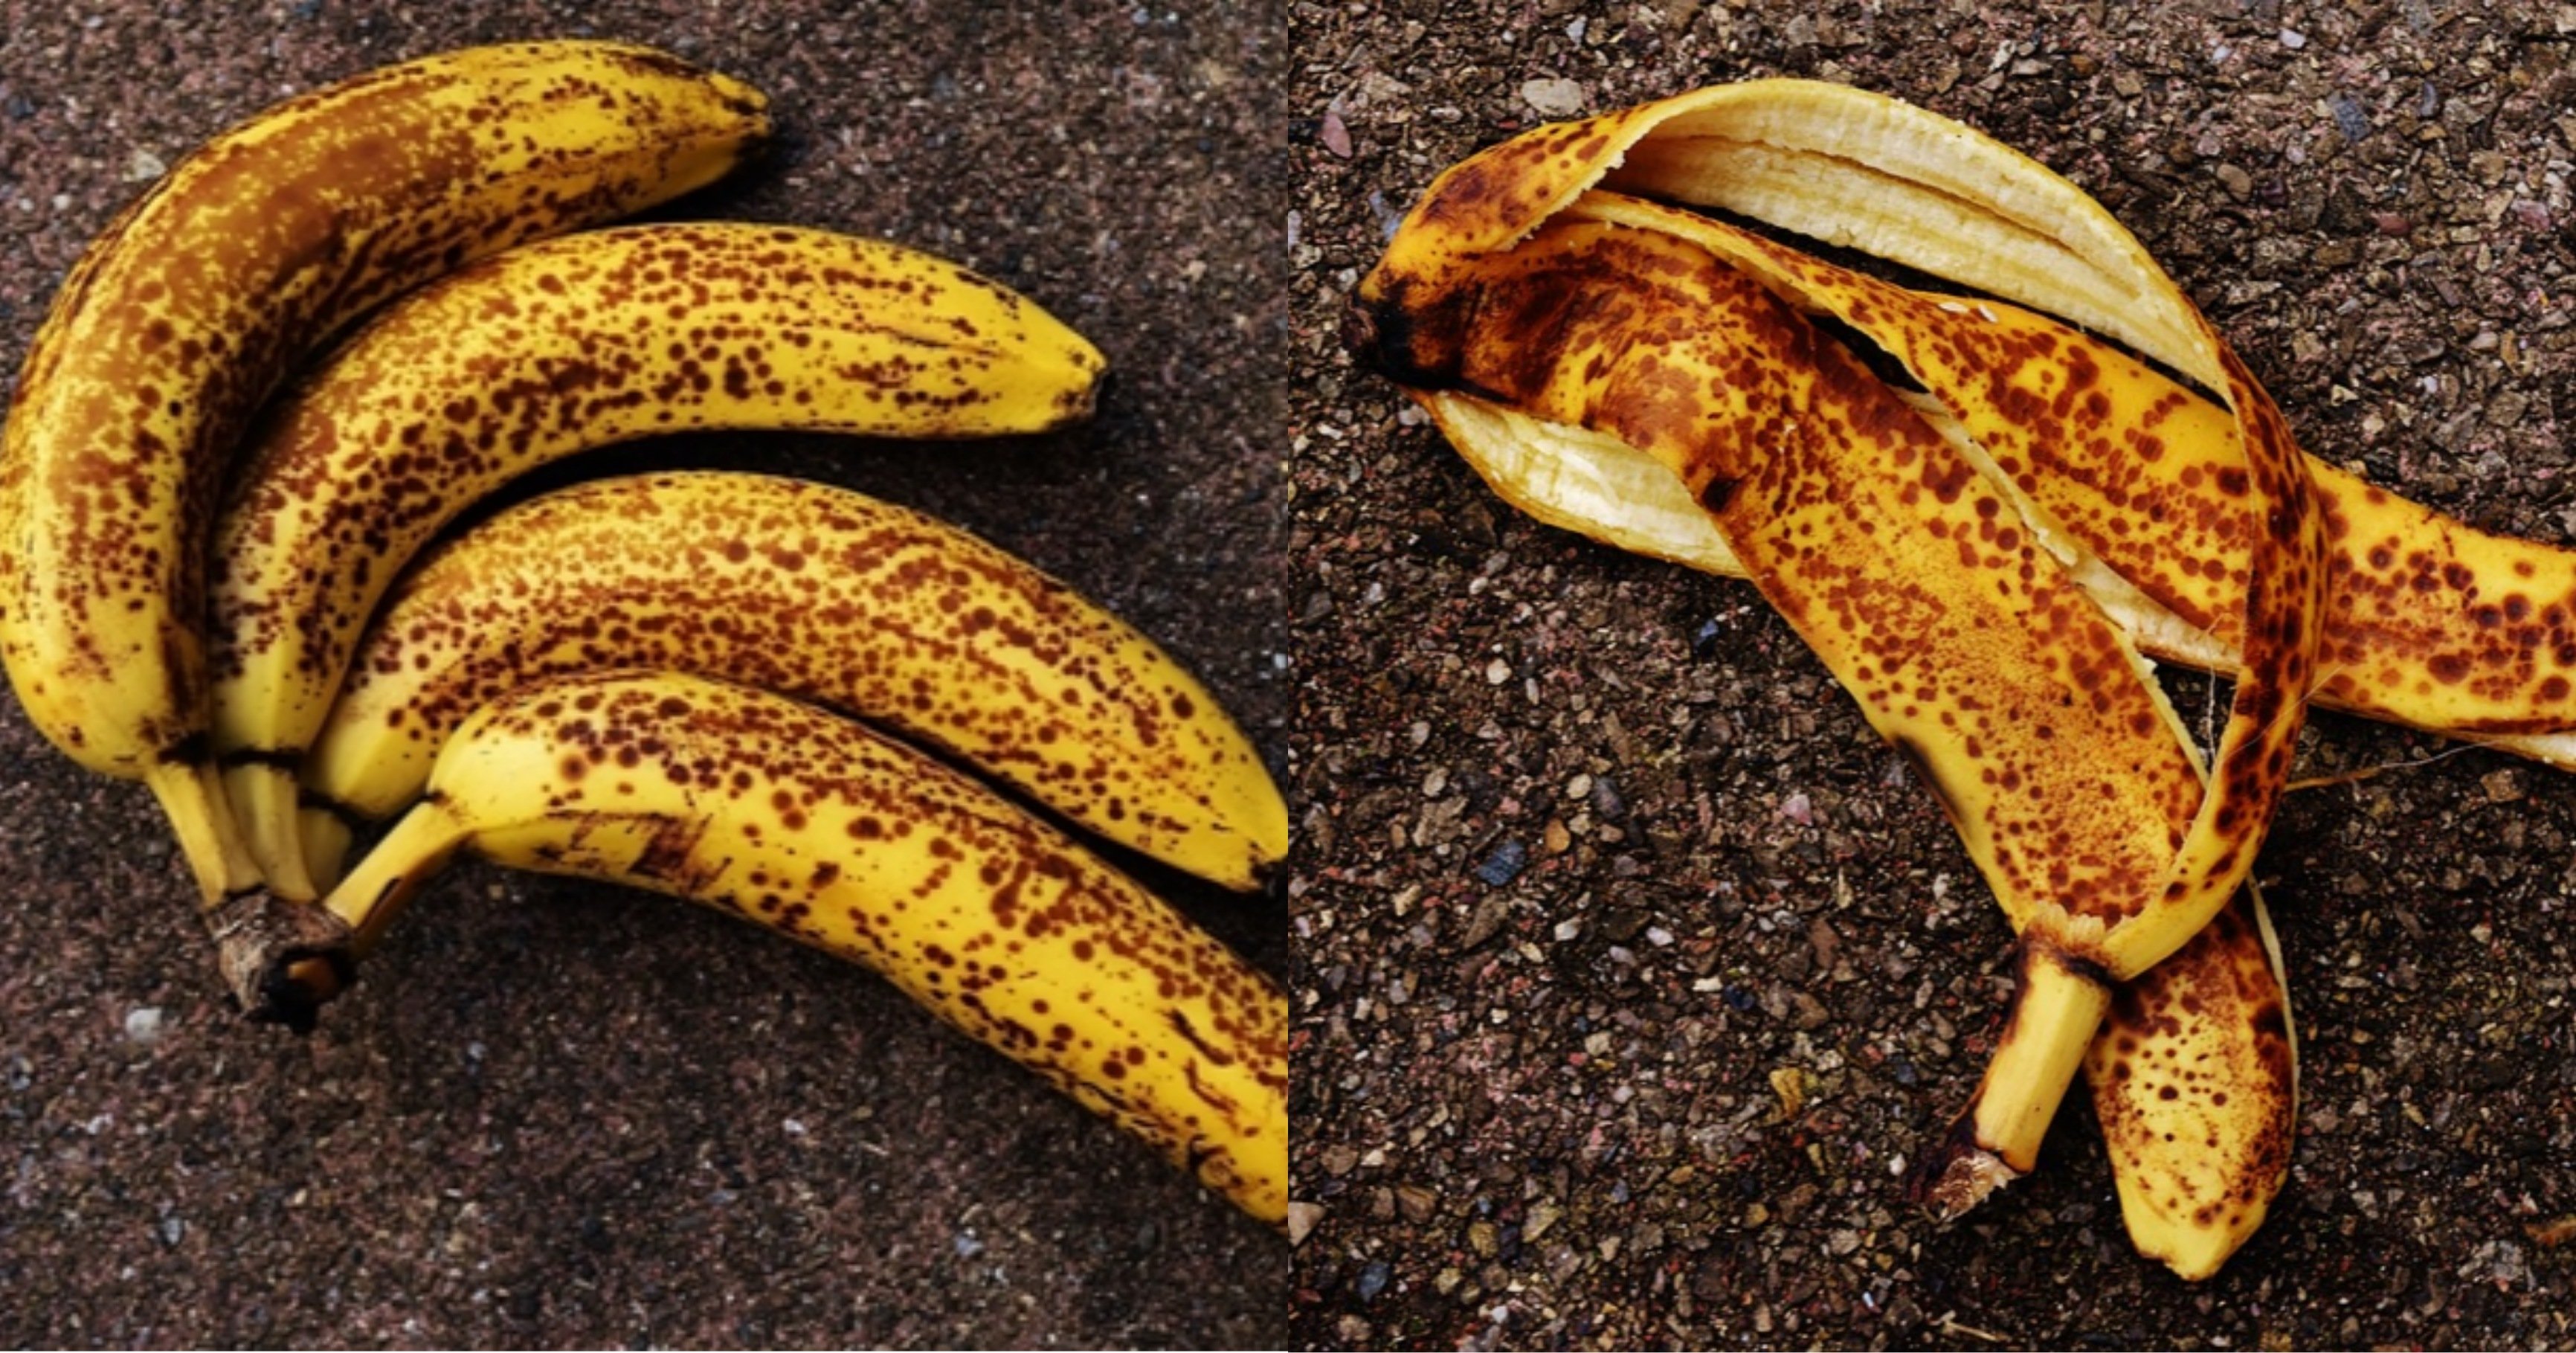 kakaotalk 20211109 222136610.jpg?resize=1200,630 - 사람들이 모르고 먹고 있는 '검은 반점이 있는 바나나'를 먹게 되면 우리 몸에 일어나는 변화